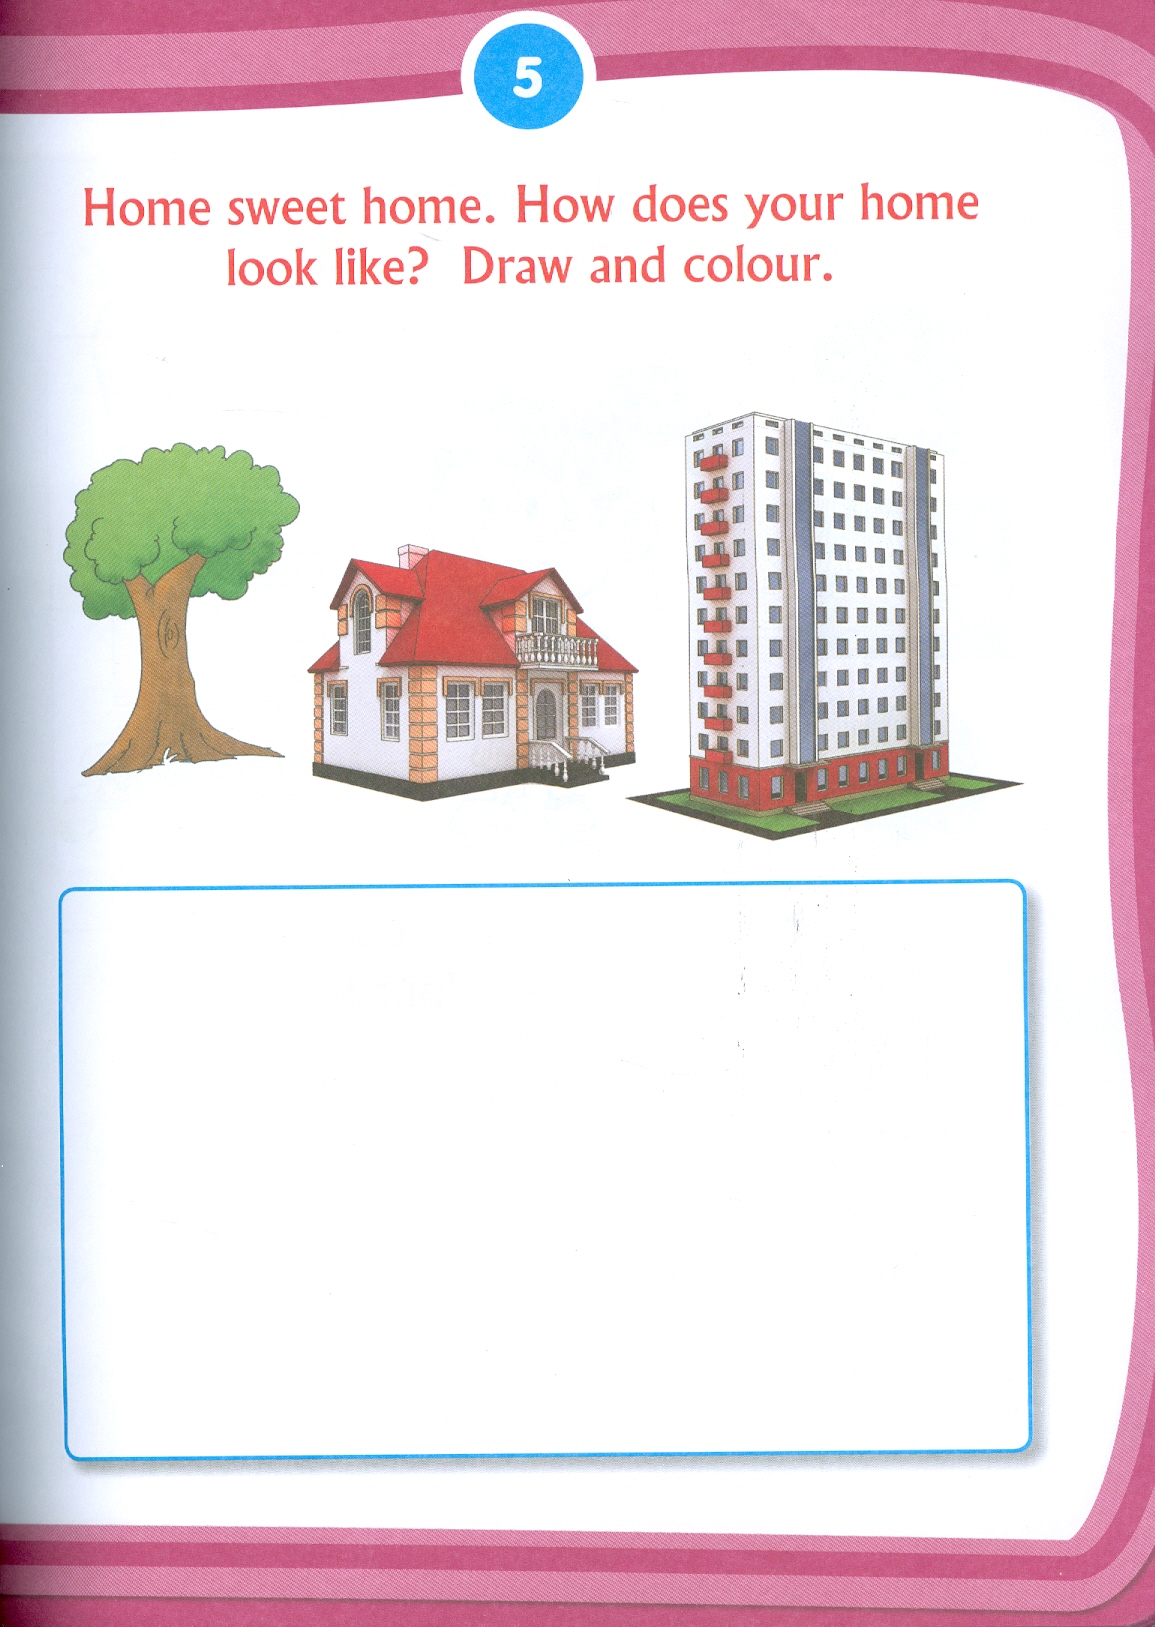 Kid's 3rd Activity Book Environment - Age 5+ (Các Hoạt Động Môi Trường Cho Trẻ 5+: Thiên Nhiên Diệu Kỳ)